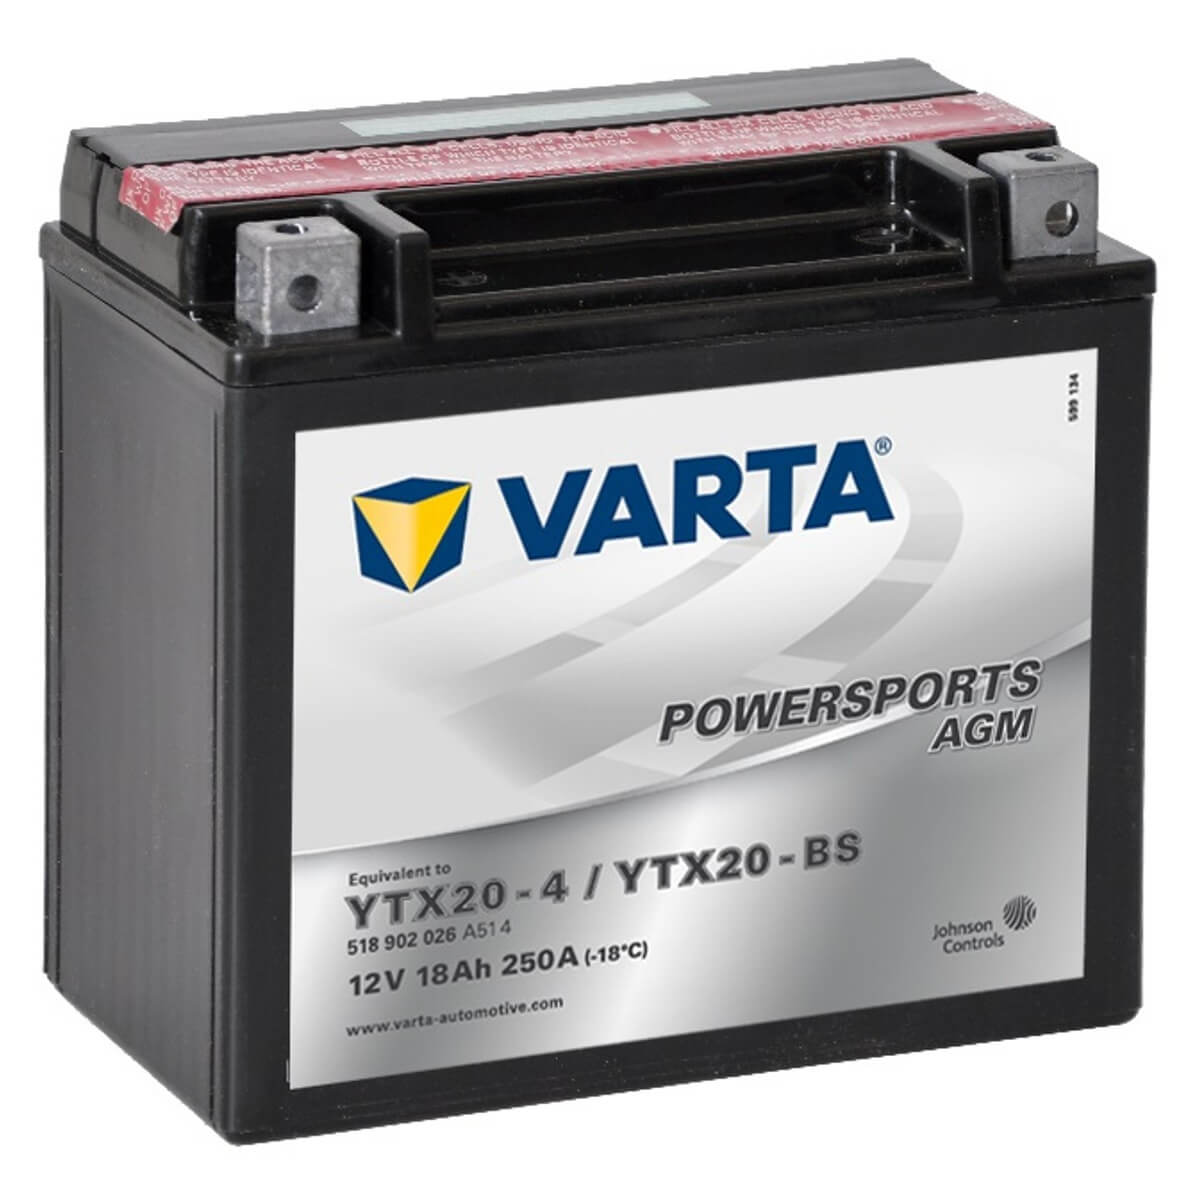 Varta Powersports 518902 AGM 12V 18Ah 250A